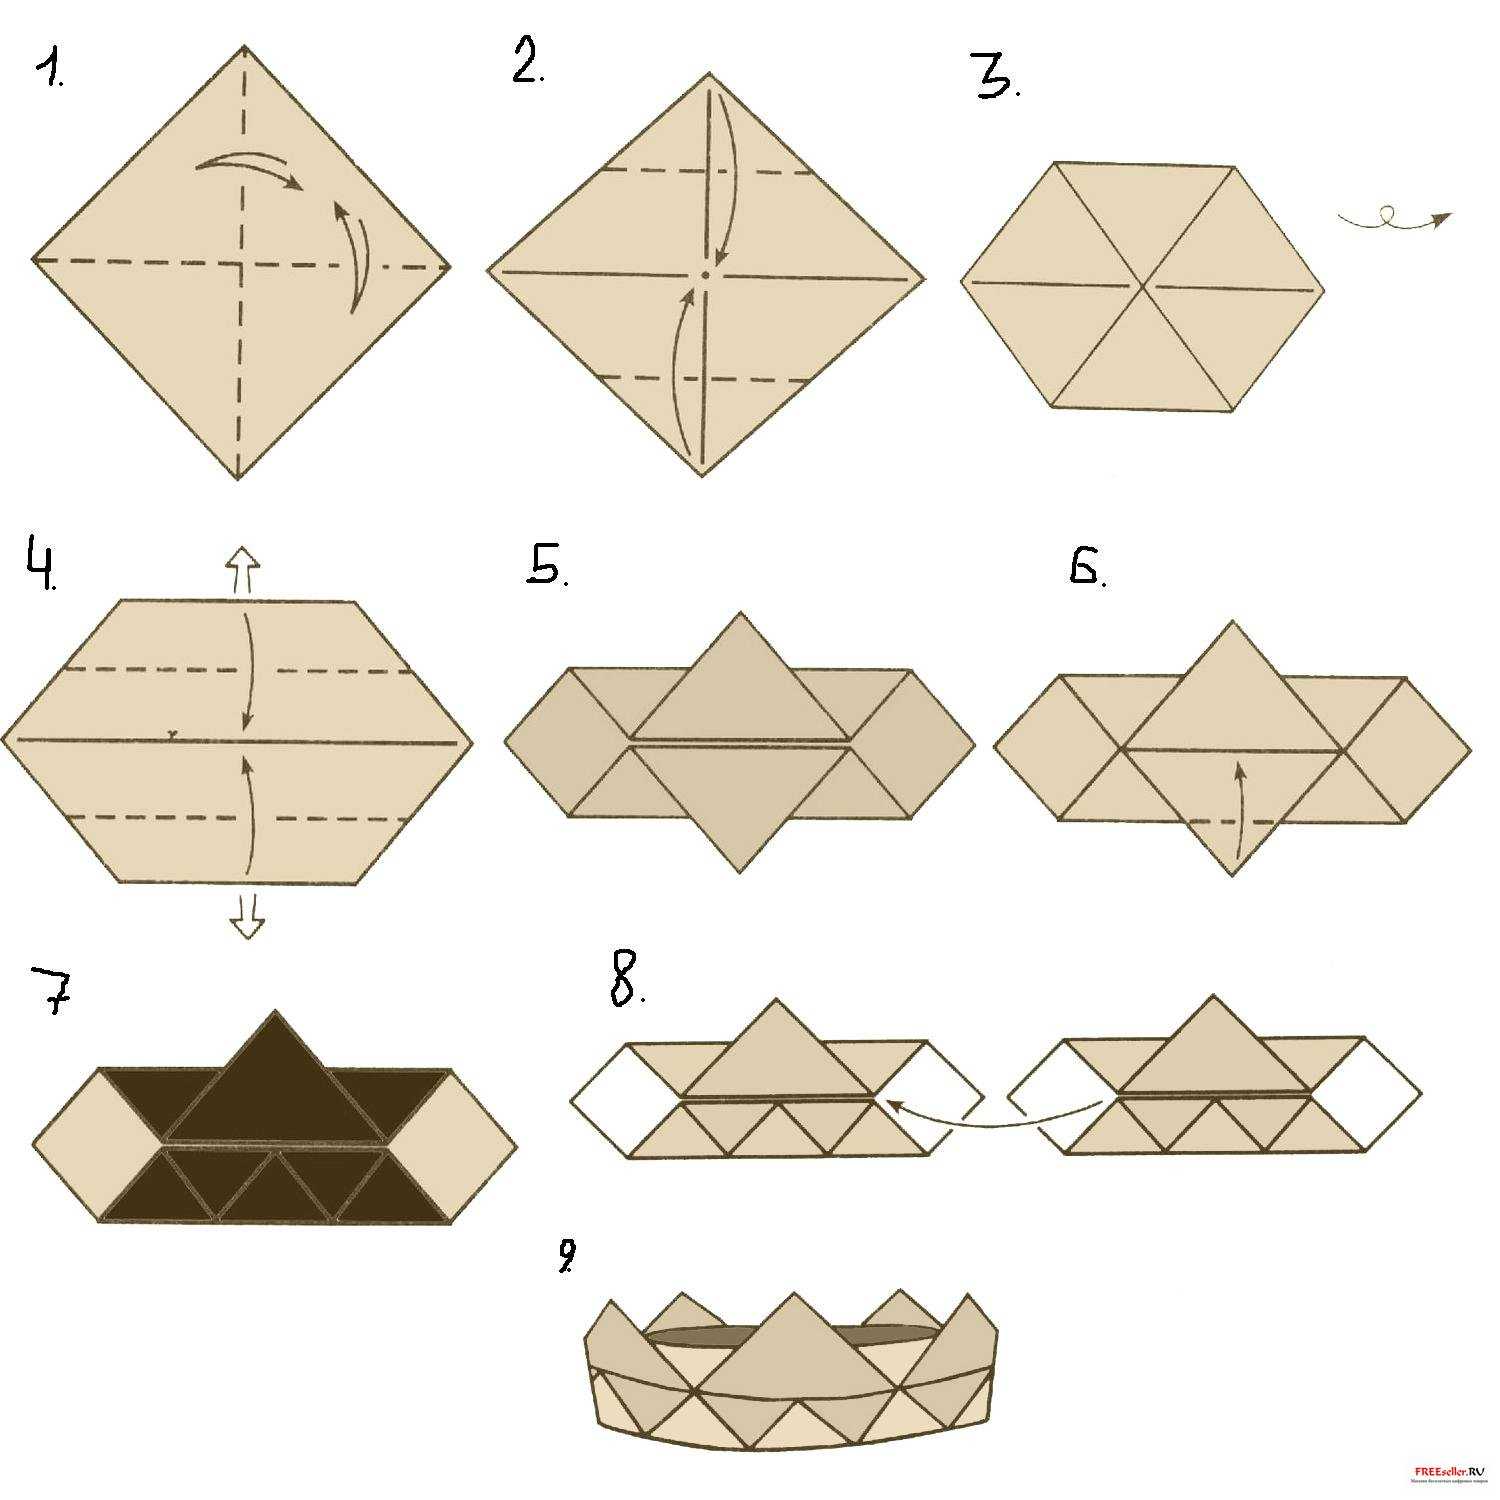 Своими руками изготовить декоративные корзинки в технике модульного оригами вам помогут детальные схемы сборки и описания представленные в нашей статье